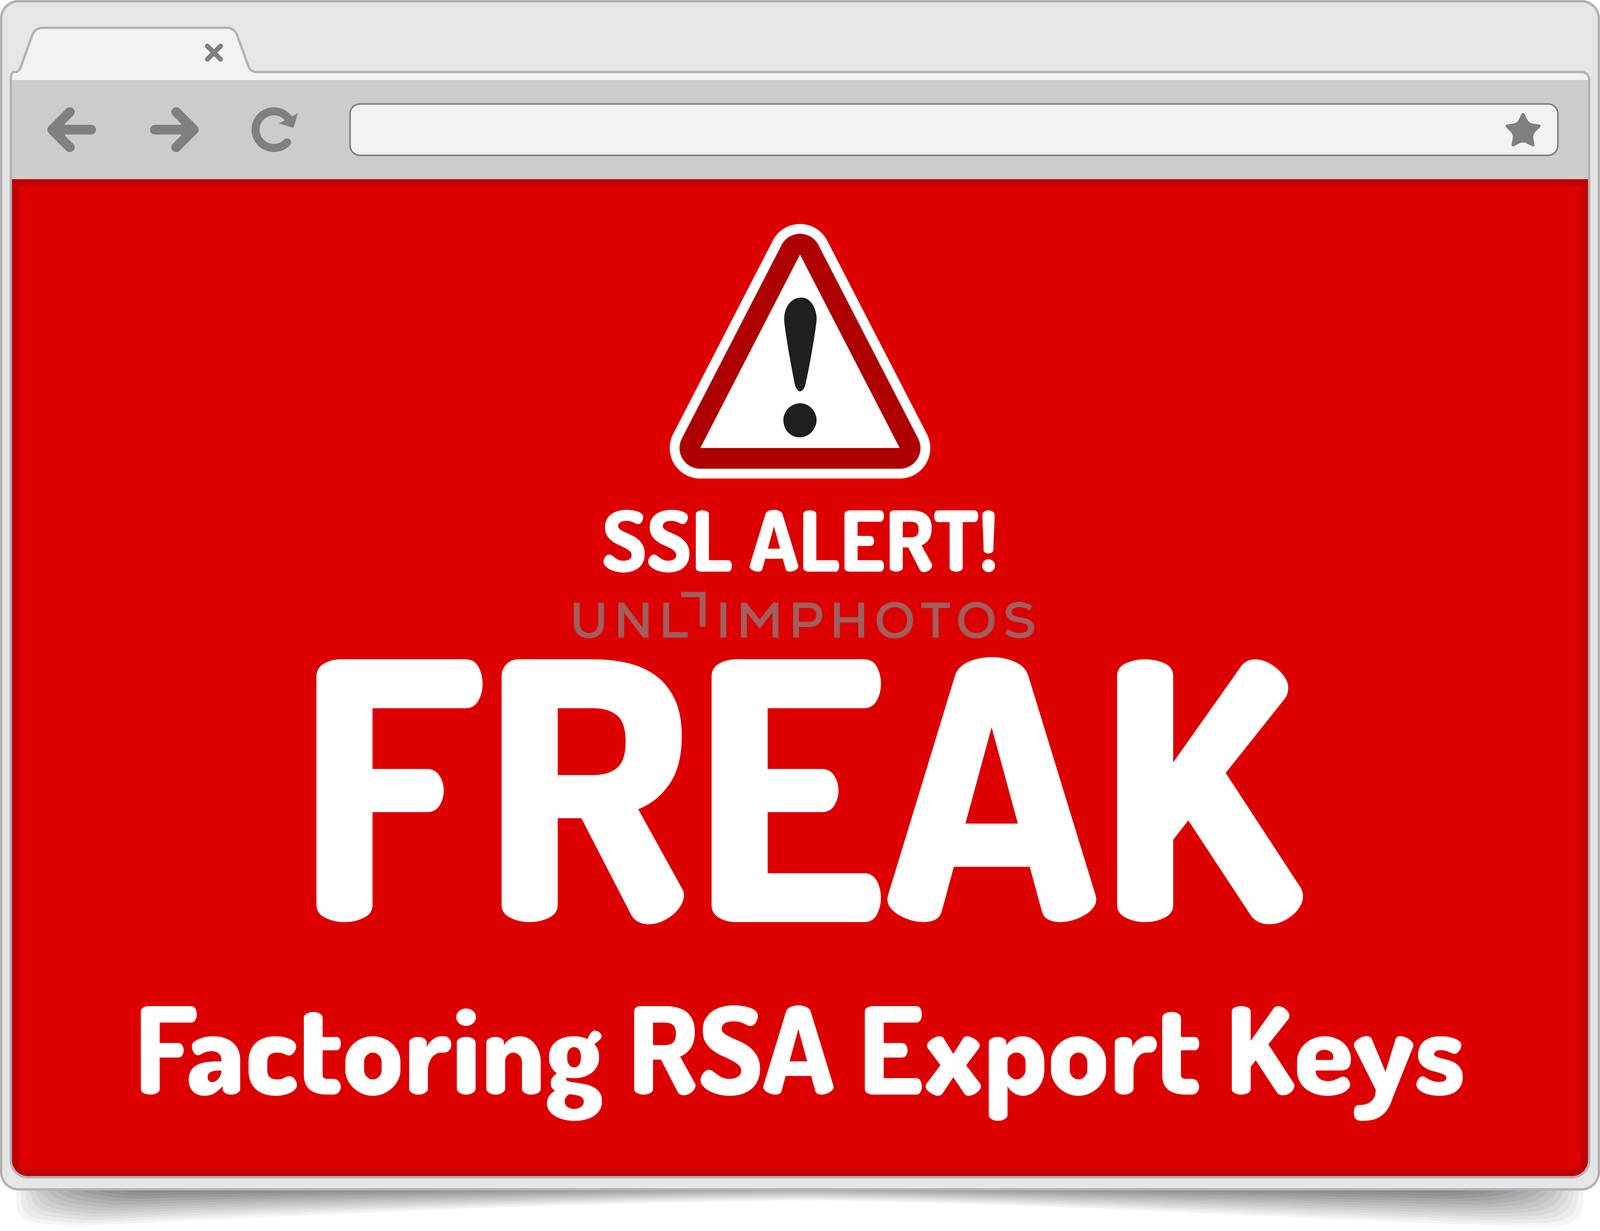 FREAK - Factoring RSA Export Keys Security - Warning in simple o by akaprinay